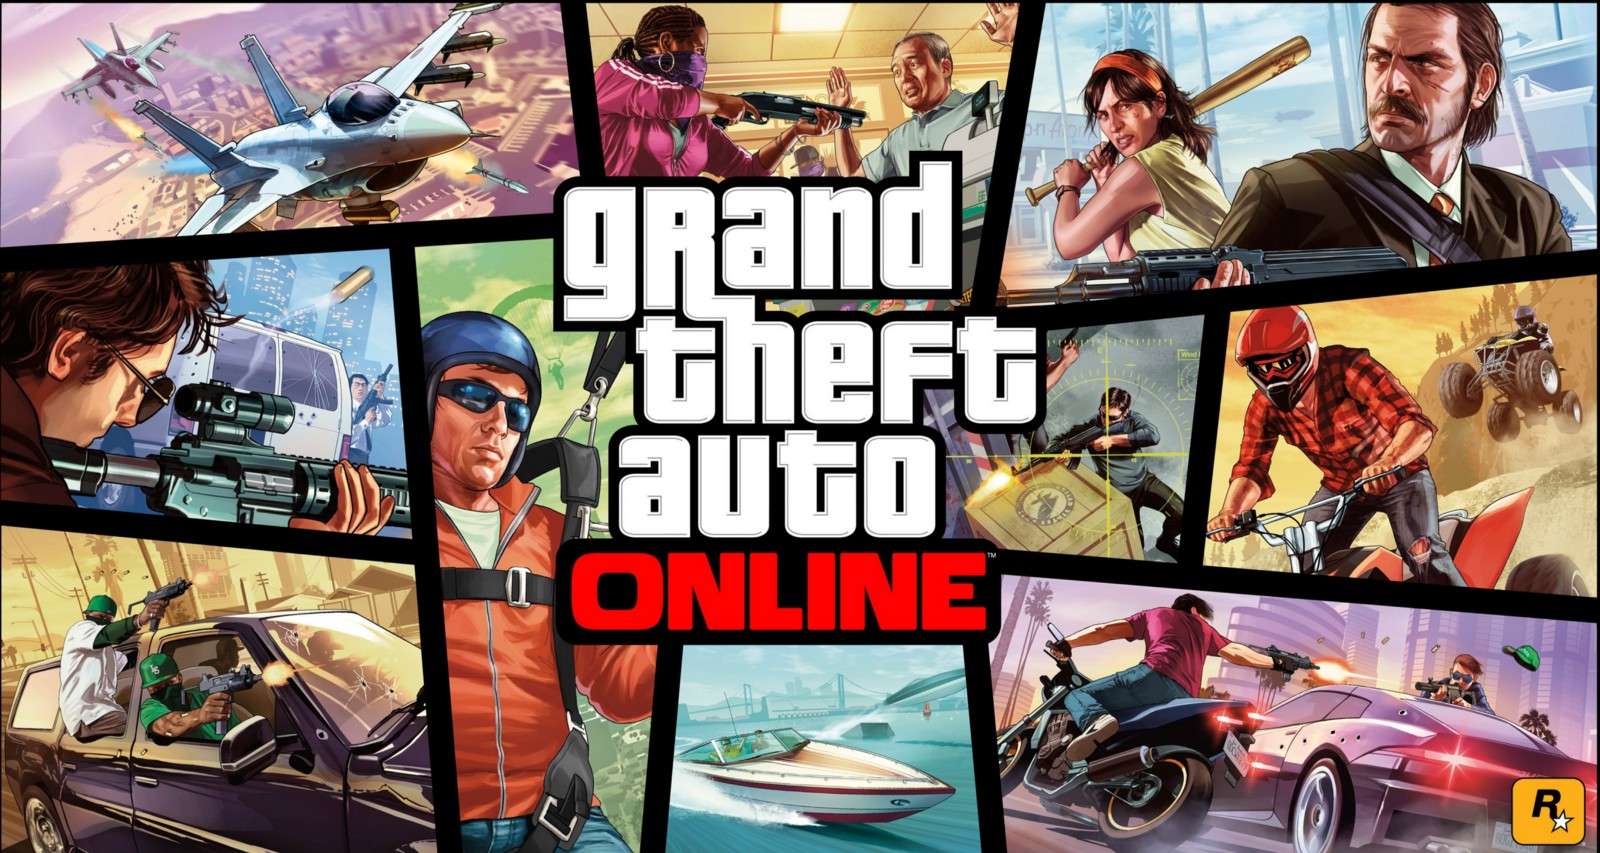 Autor cheatów Elusive do Grand Theft Auto Online zapłaci ogromną grzywnę